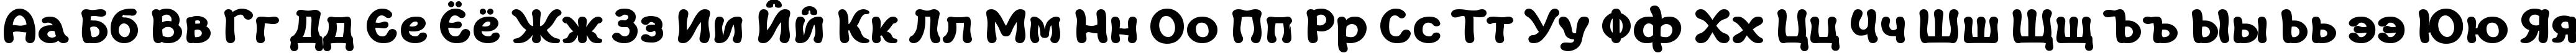 Пример написания русского алфавита шрифтом Margot Xtrafette